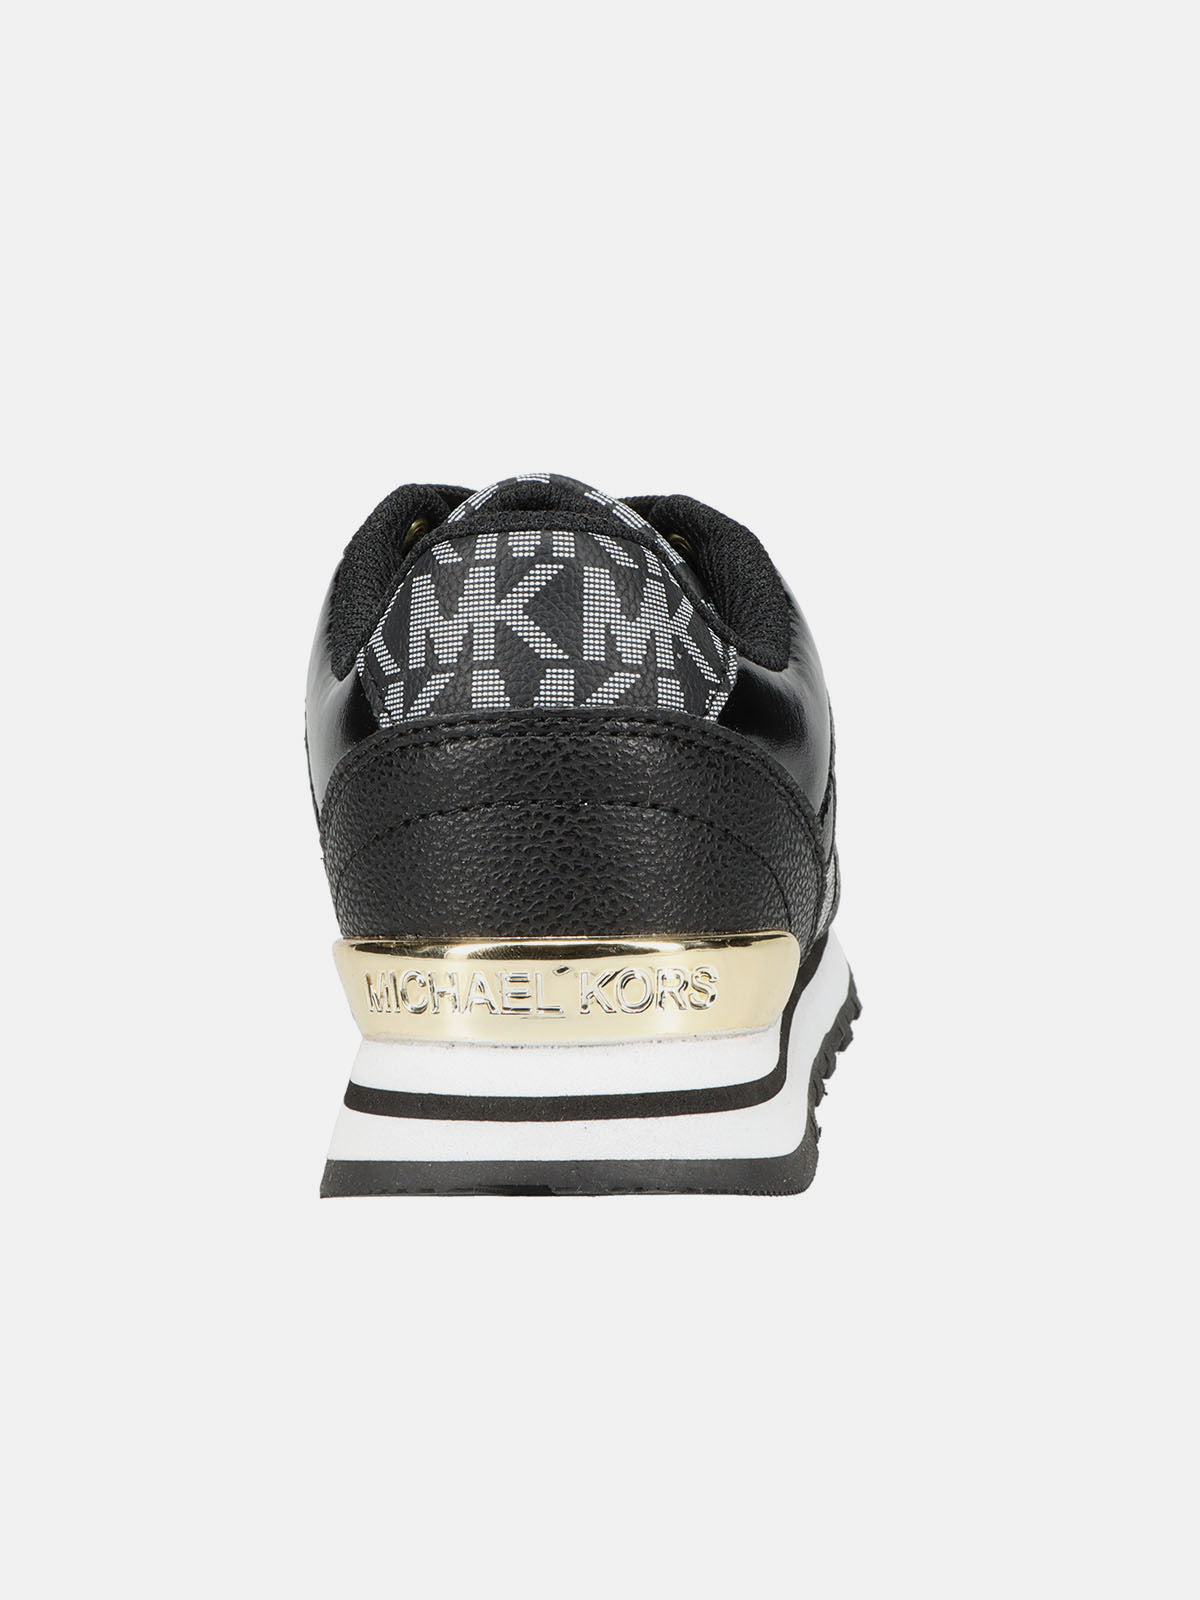 נעלי סניקרס עם הדפס לוגו ודוגמת נצנצים / ילדות- Michael Kors|מייקל קורס